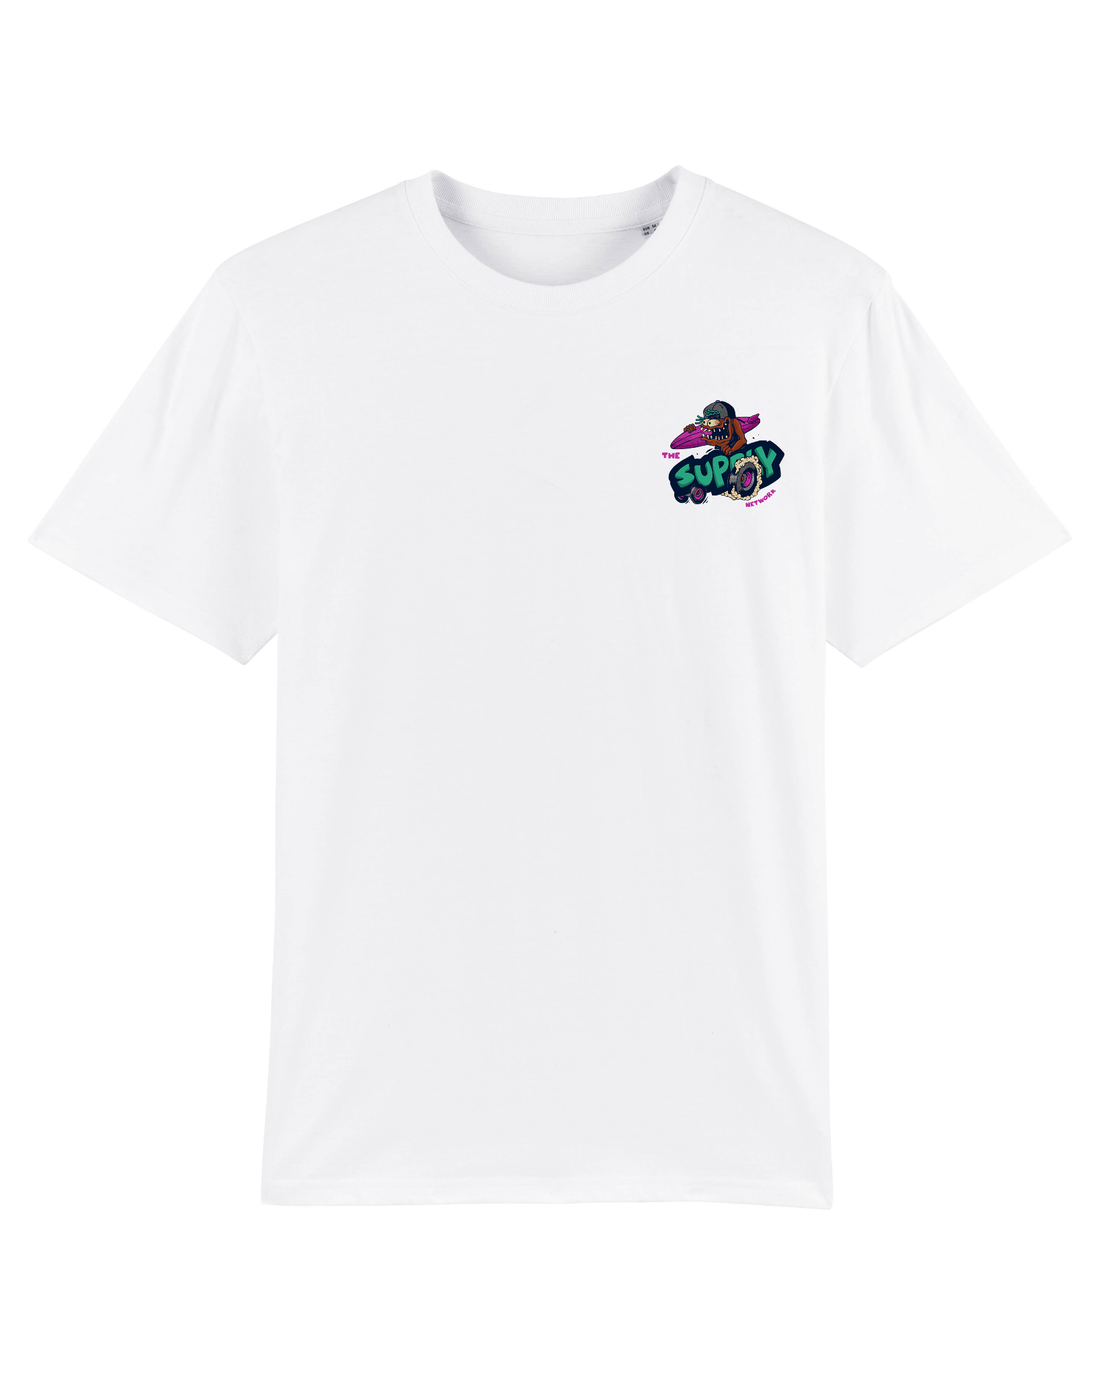 White Skater T-Shirt, Lets Go Surf Front Print